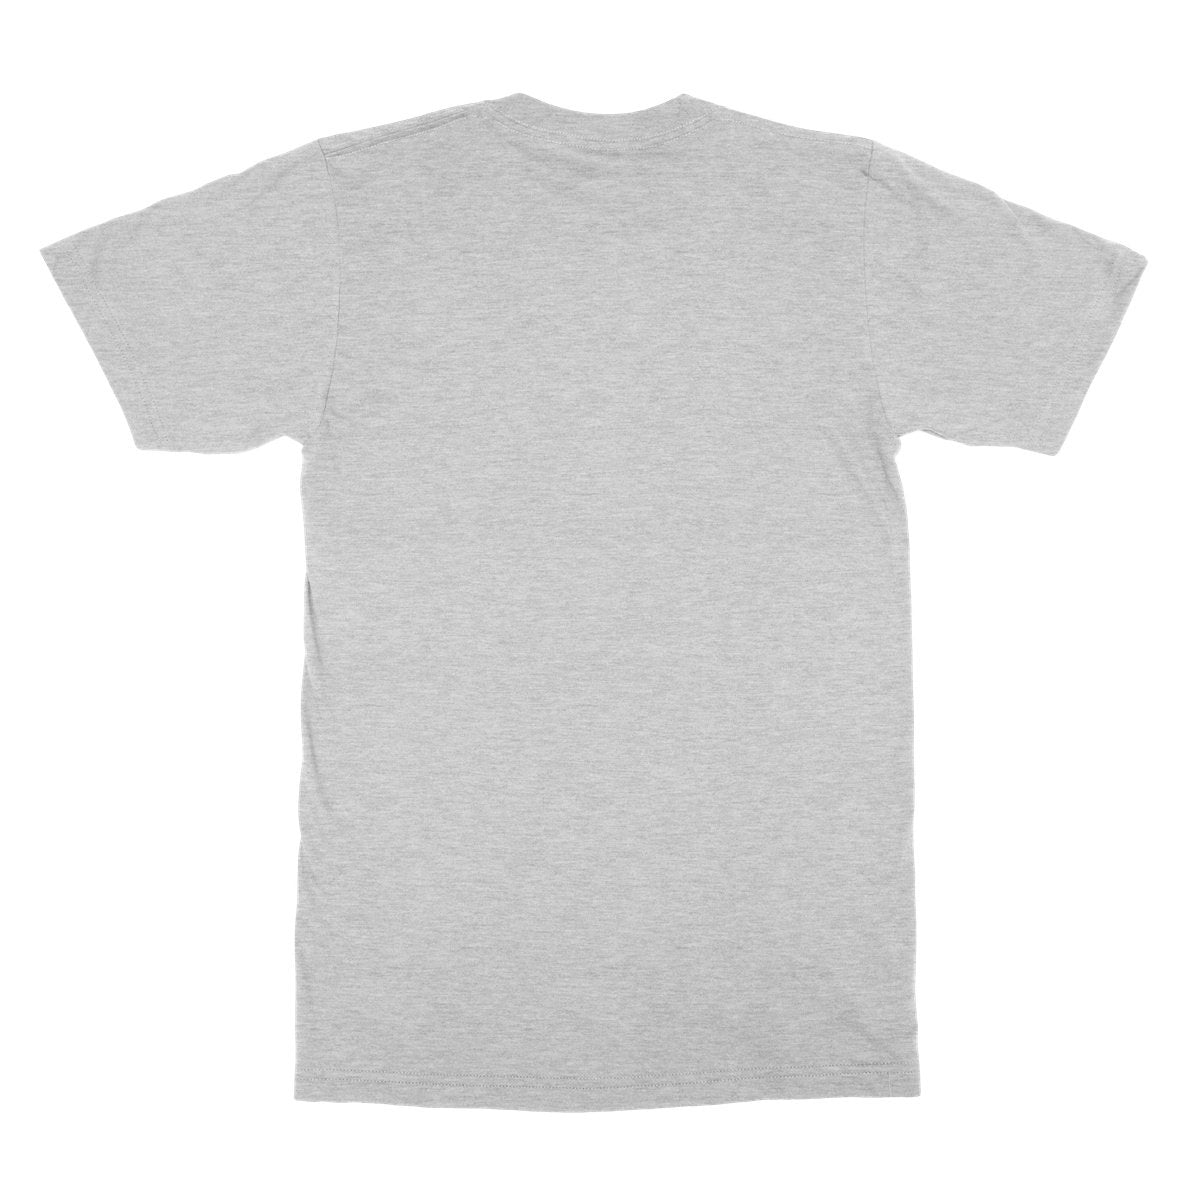 Unisex Softstyle T-Shirt - 'Hug a Dog'